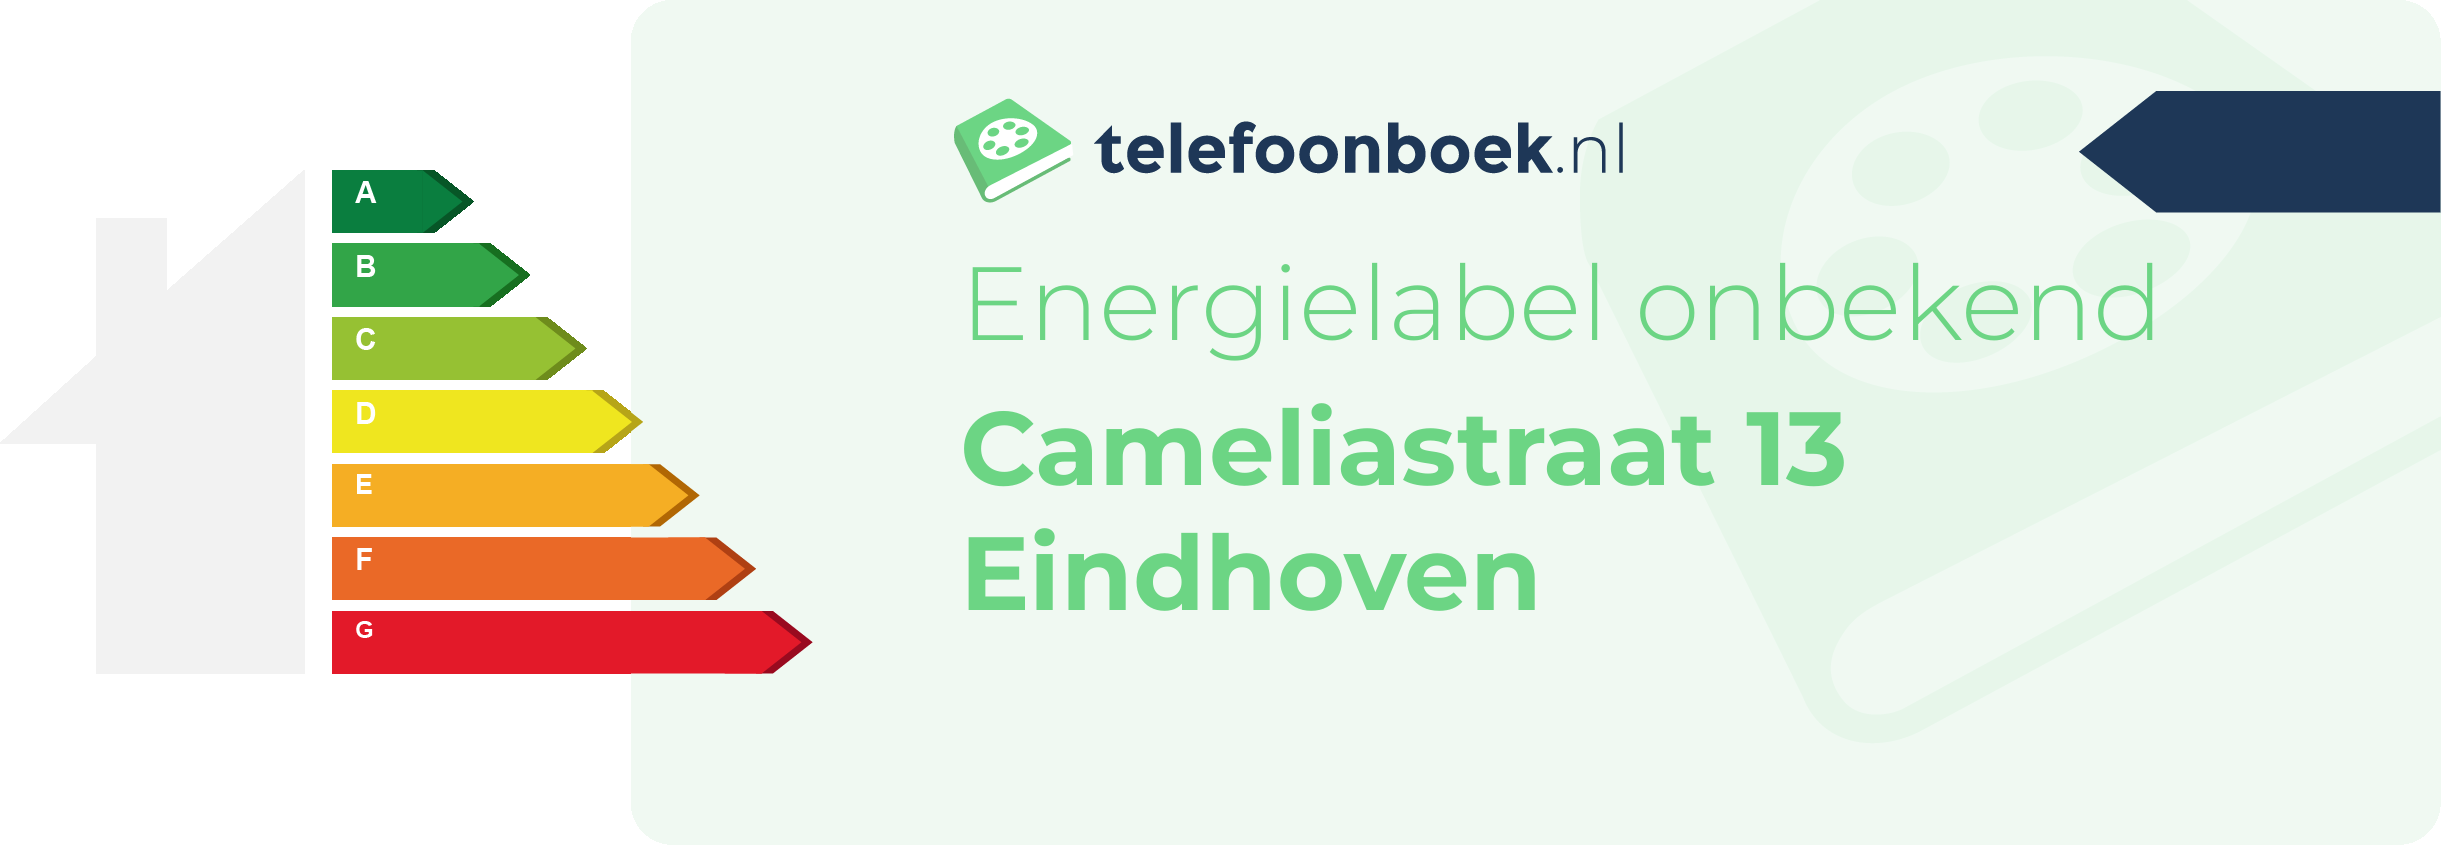 Energielabel Cameliastraat 13 Eindhoven